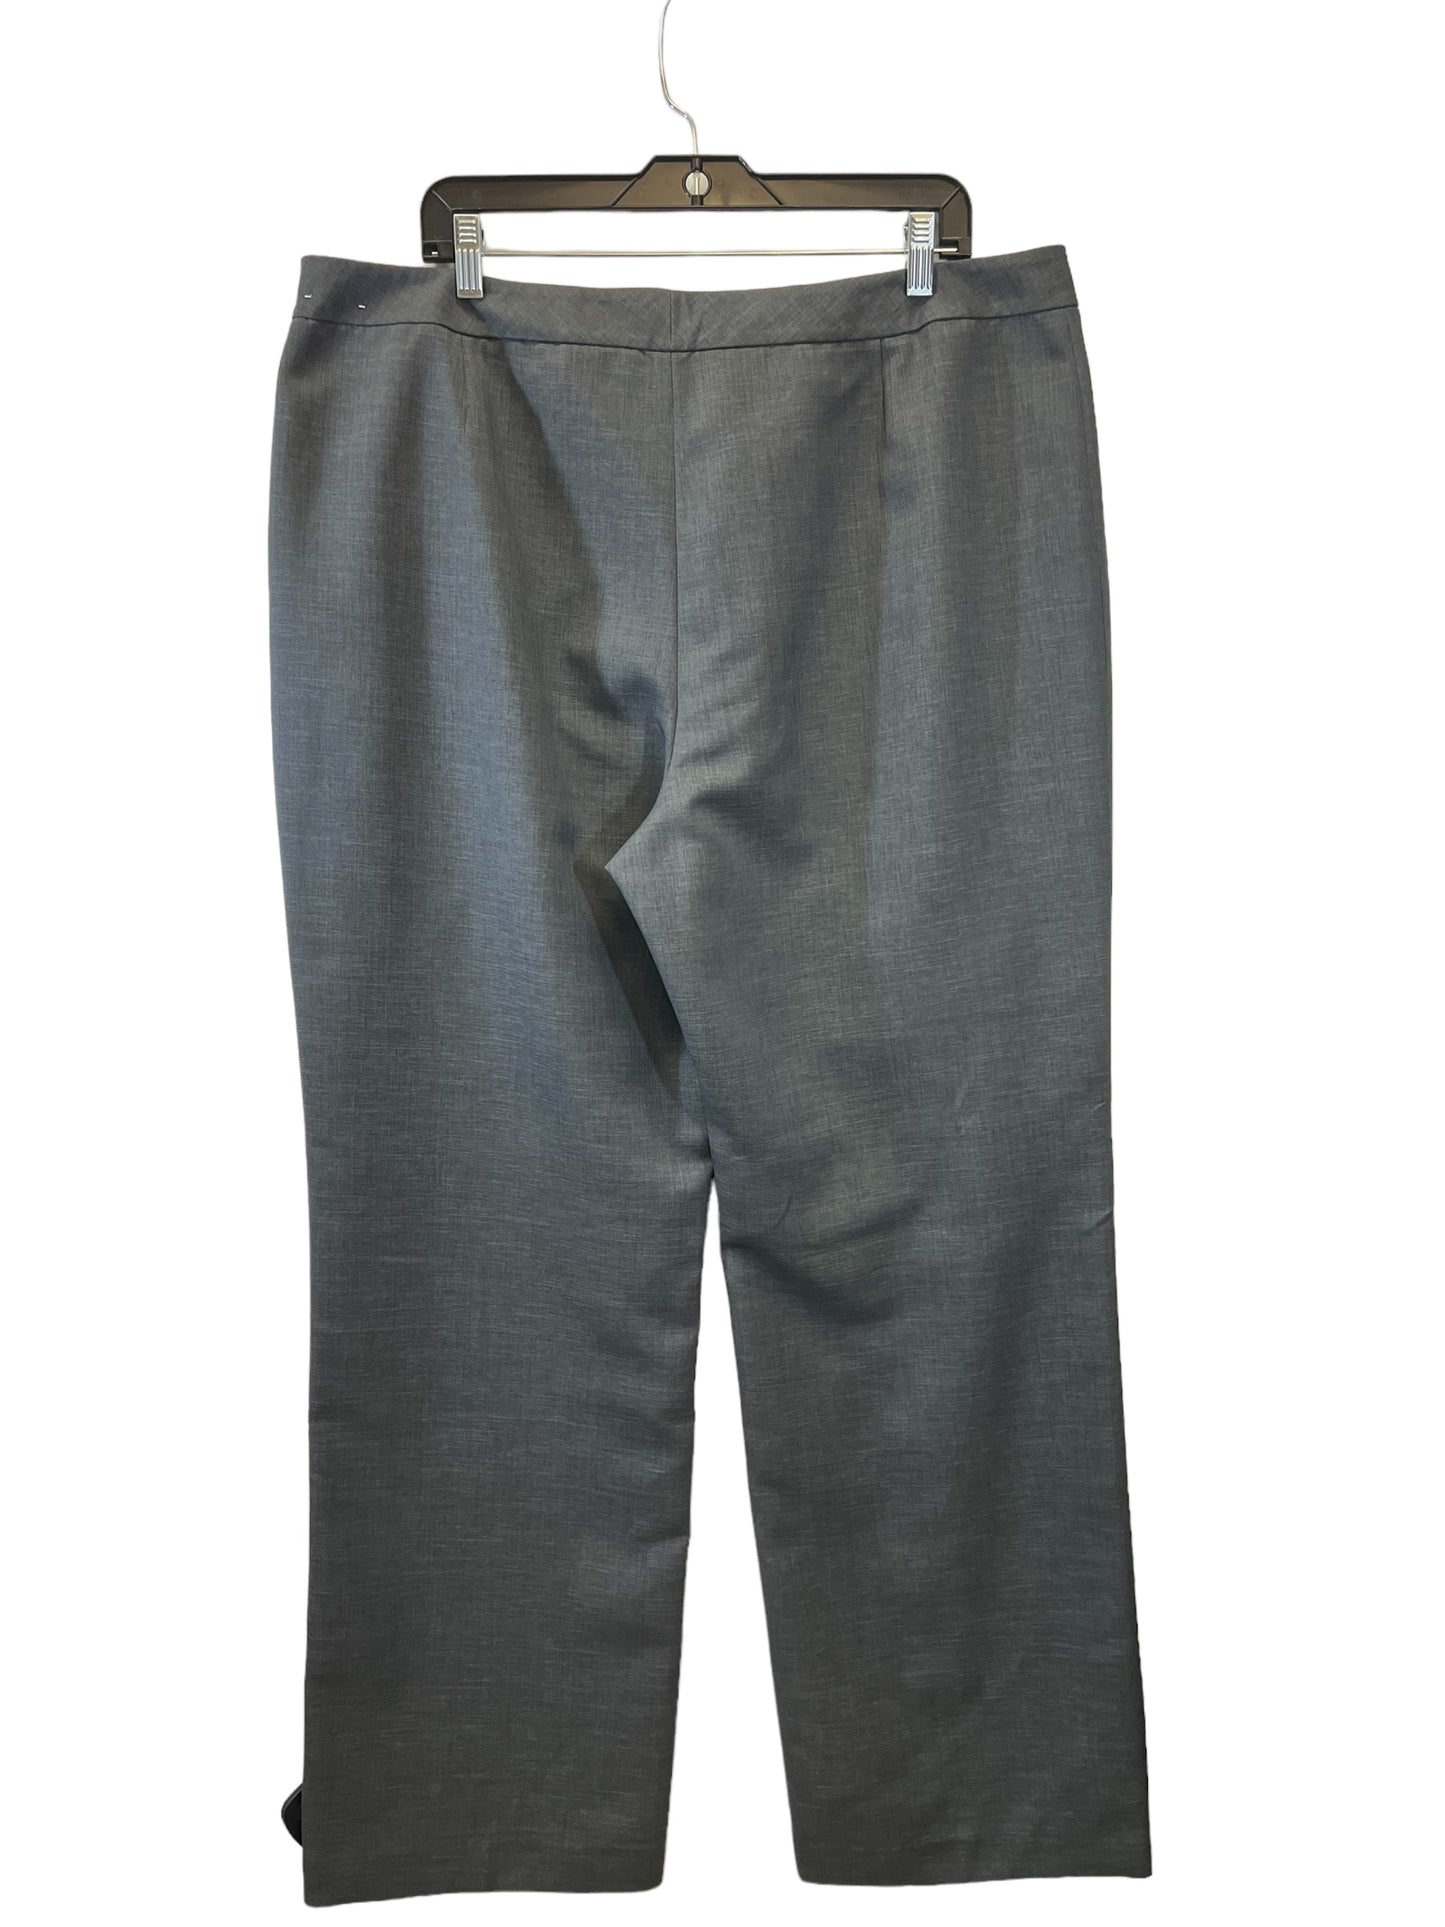 Pants Work/dress By Kasper  Size: 18